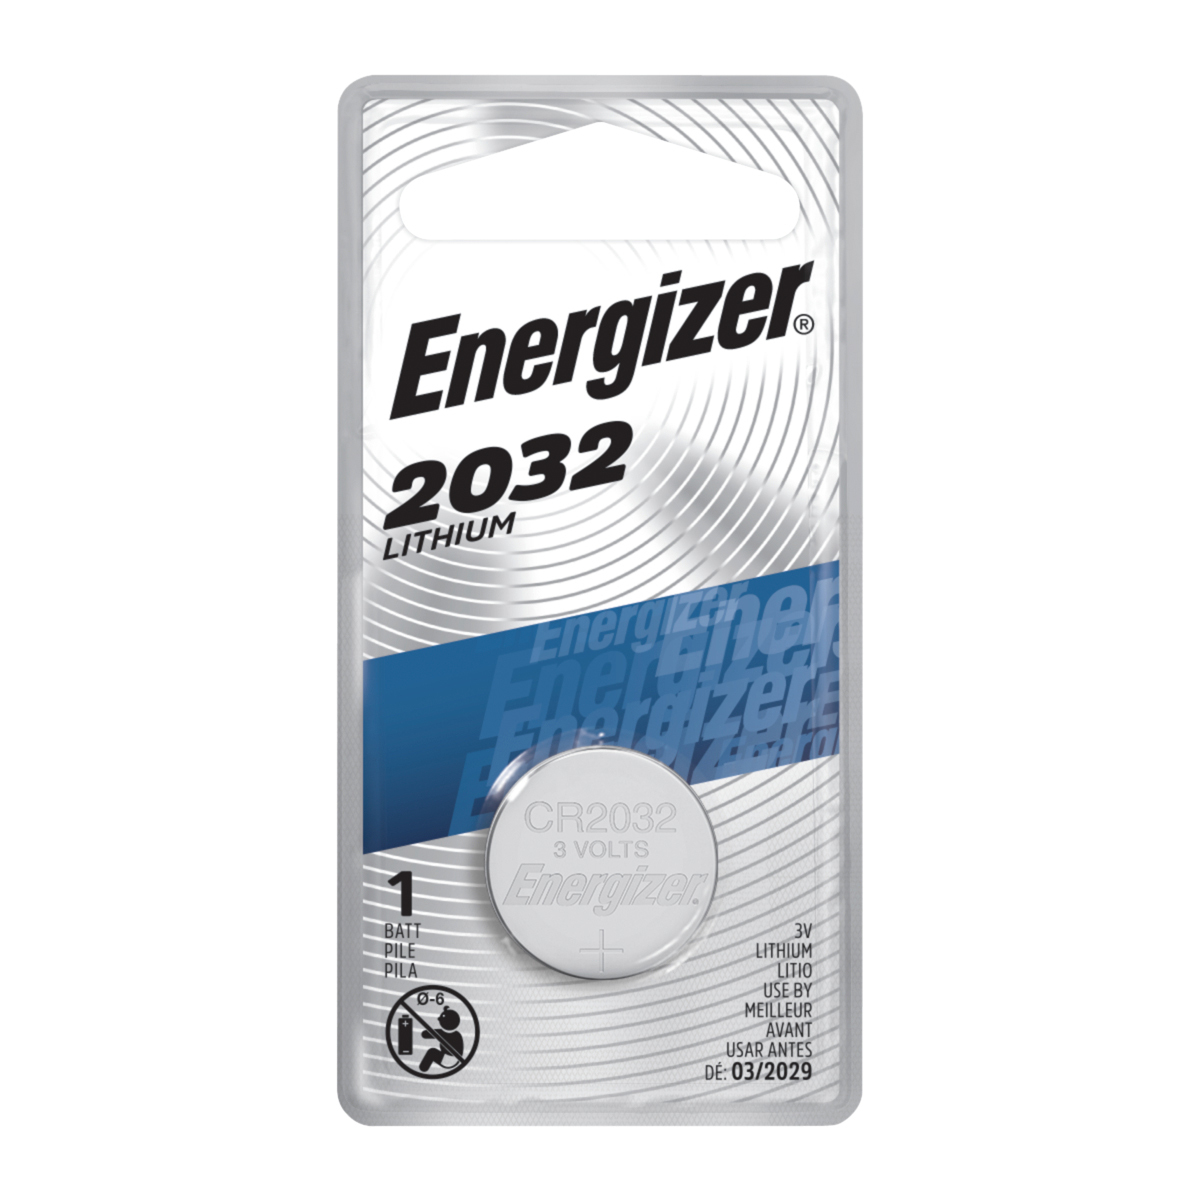  Energizer 2032 Batería CR2032 Litio 3V, 5 unidades (Paquete de  1) : Salud y Hogar